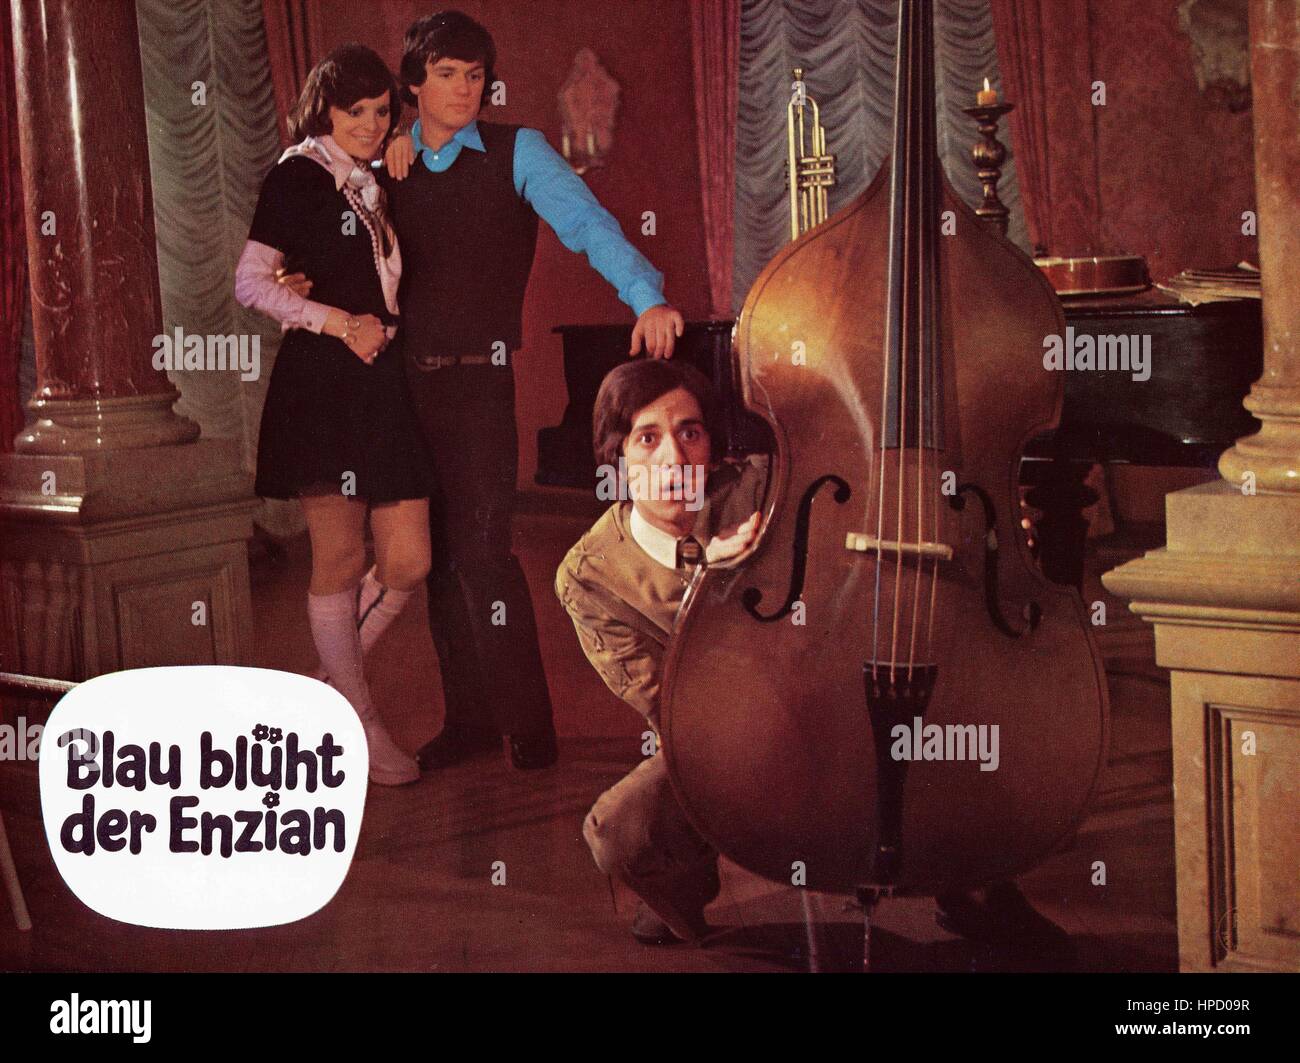 Blau blüht der Enzian, Deutschland 1973, Regie: Franz Antel, Darsteller: Catharina Conti, Hans Hansi Kraus, Ilja Richter Stock Photo